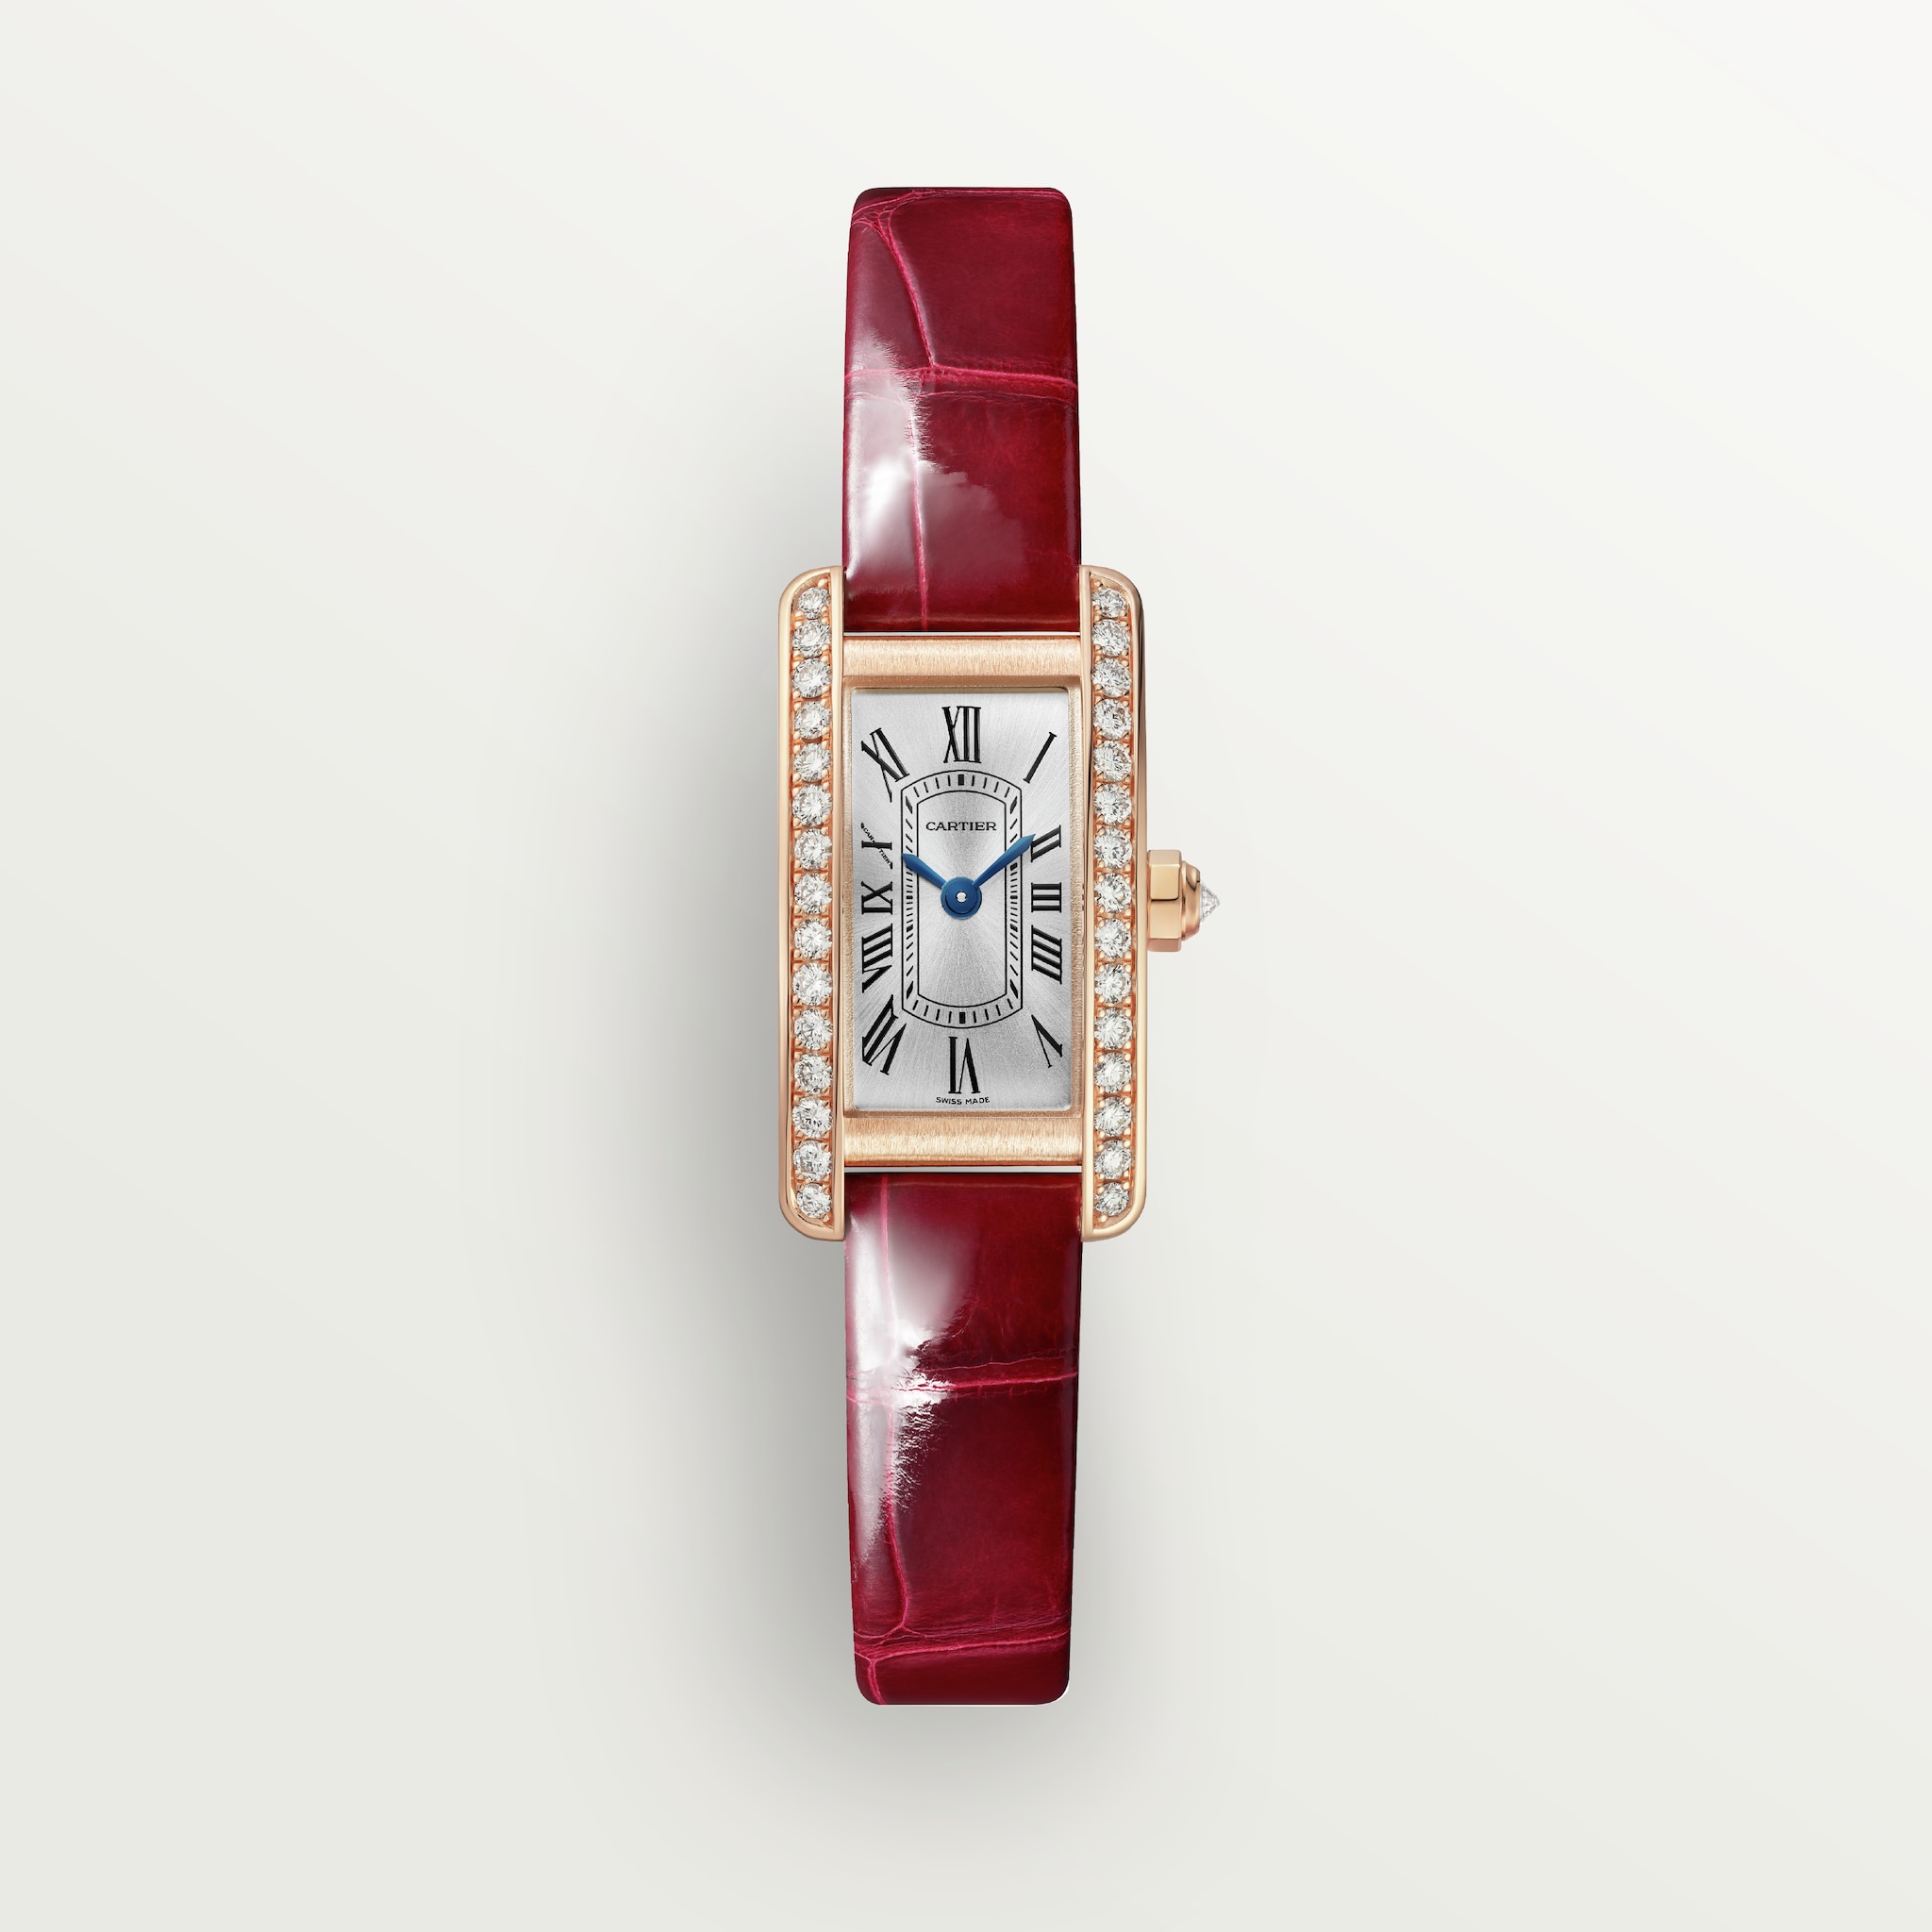 Tank Américaine watchMini model, quartz movement, rose gold, diamonds, leather